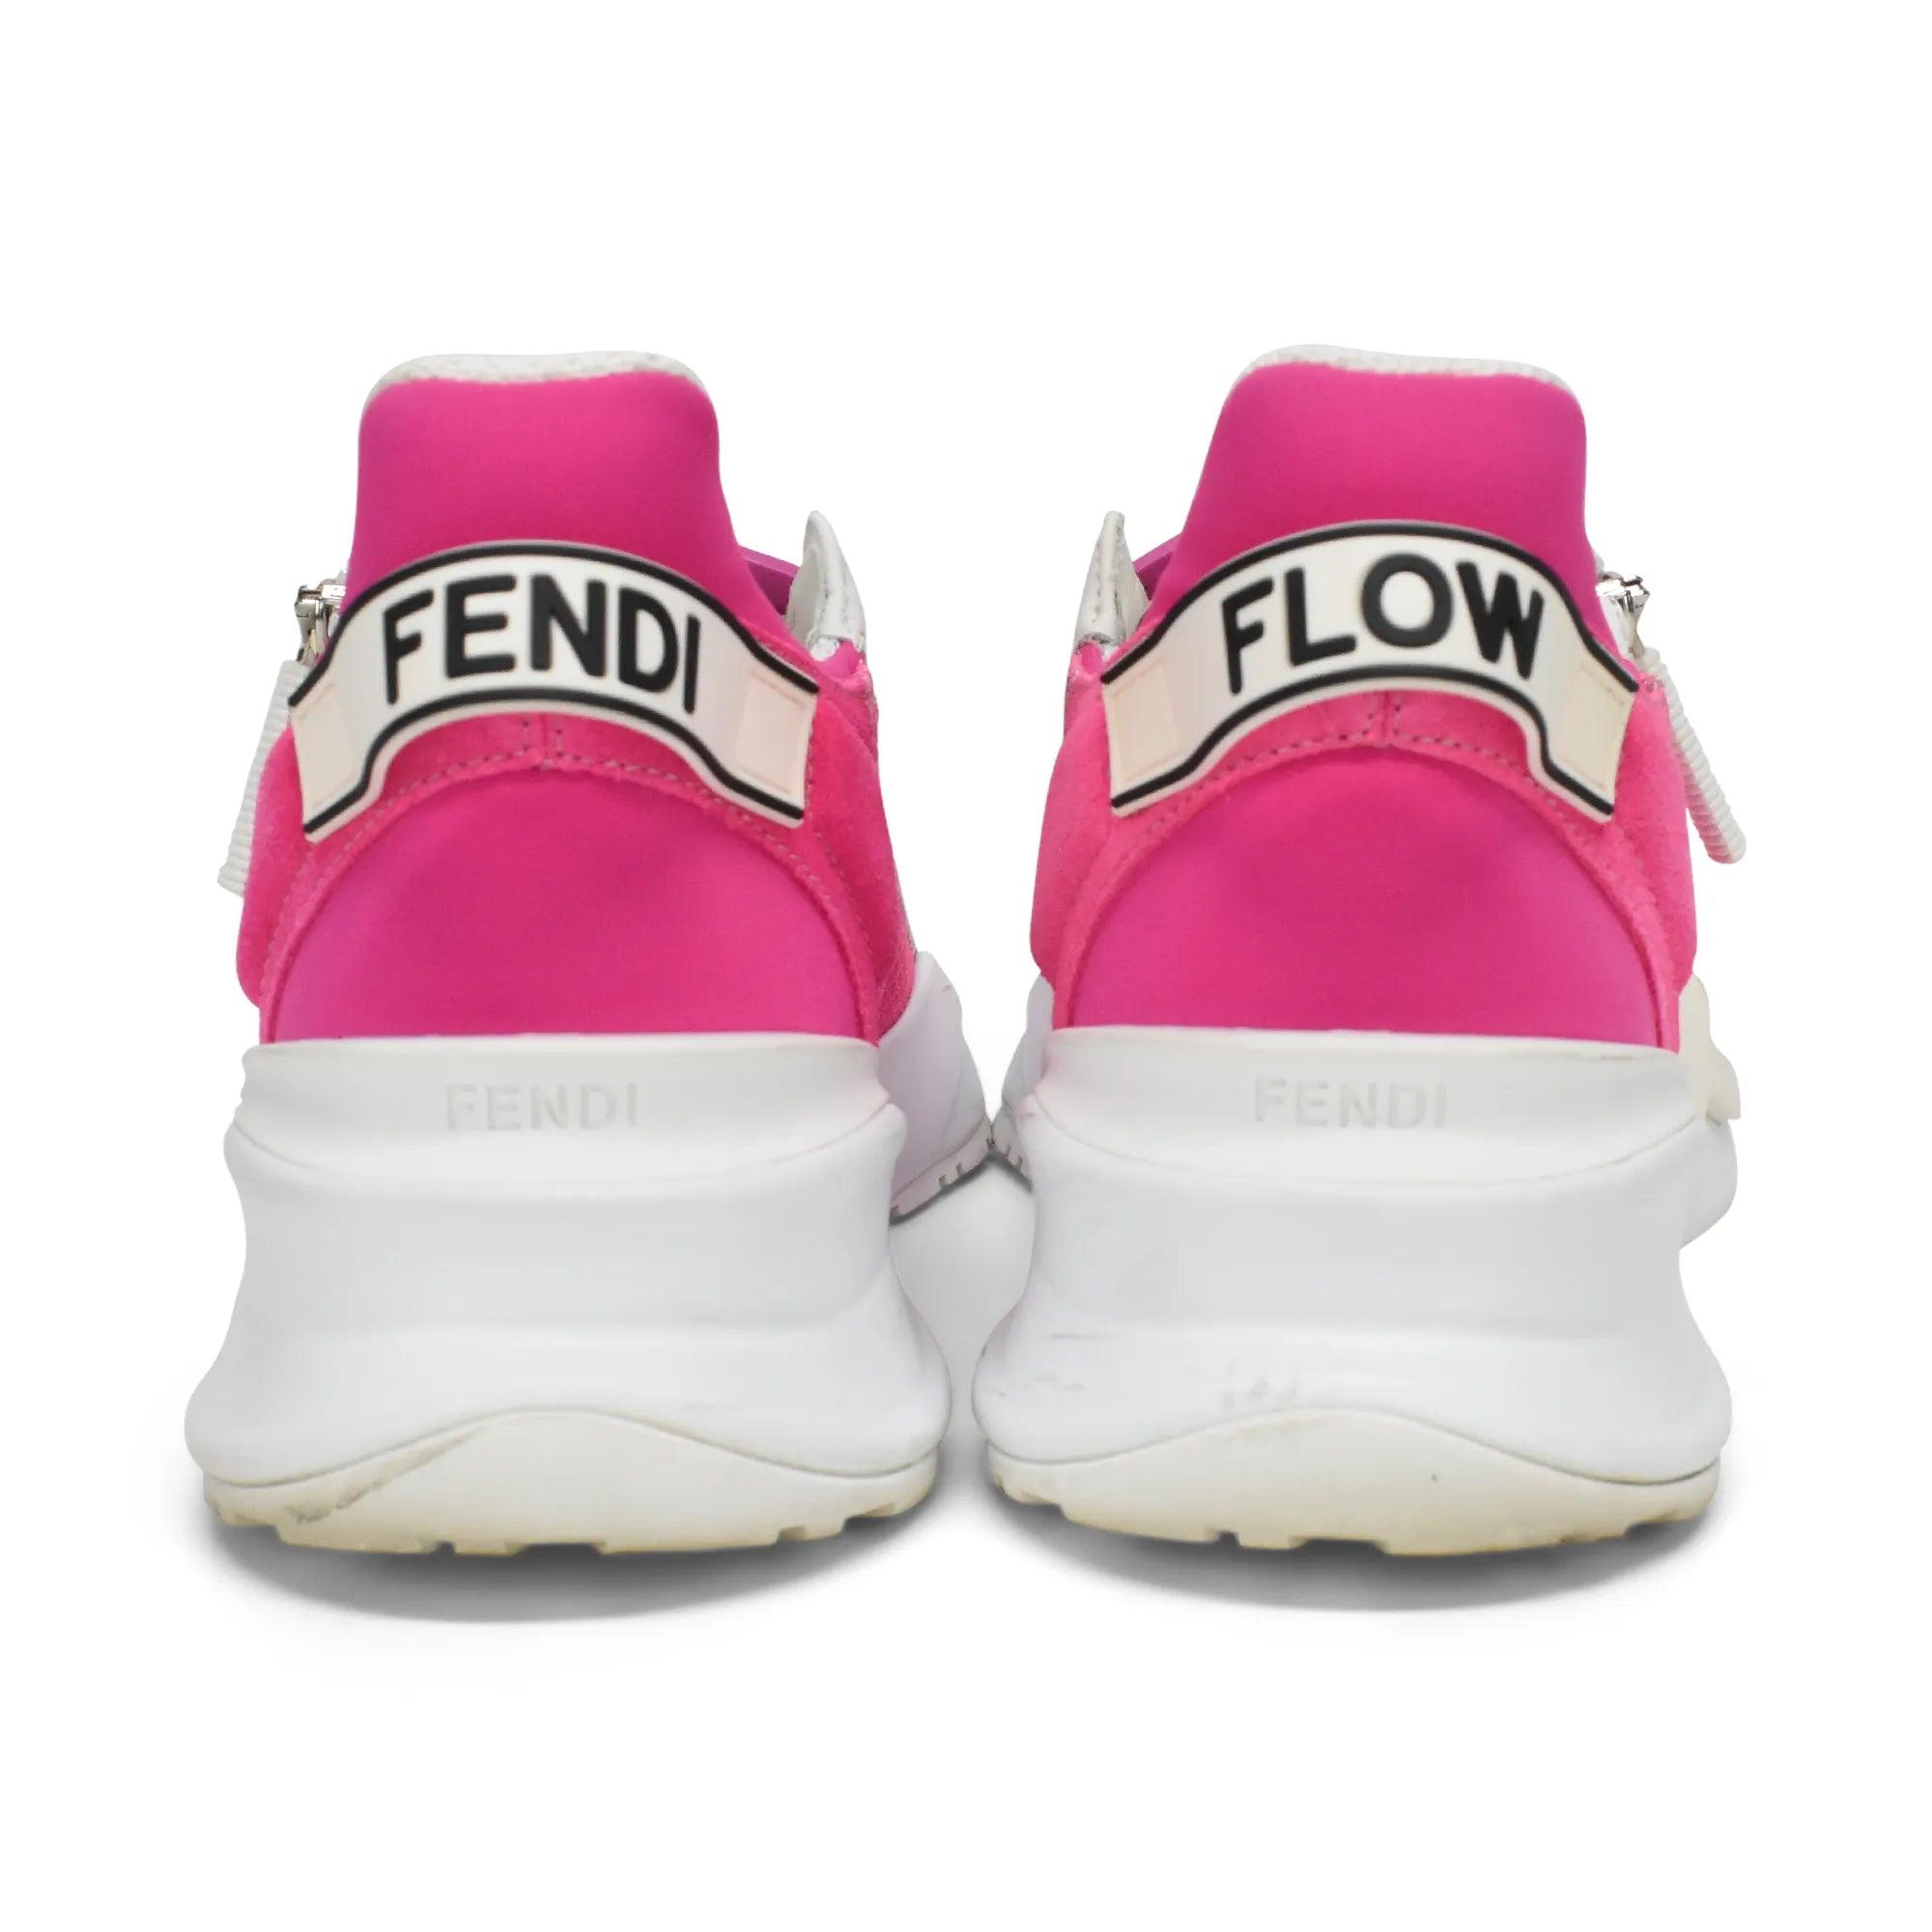 Fendi 'Flow' Sneakers - Women's 36 - Fashionably Yours